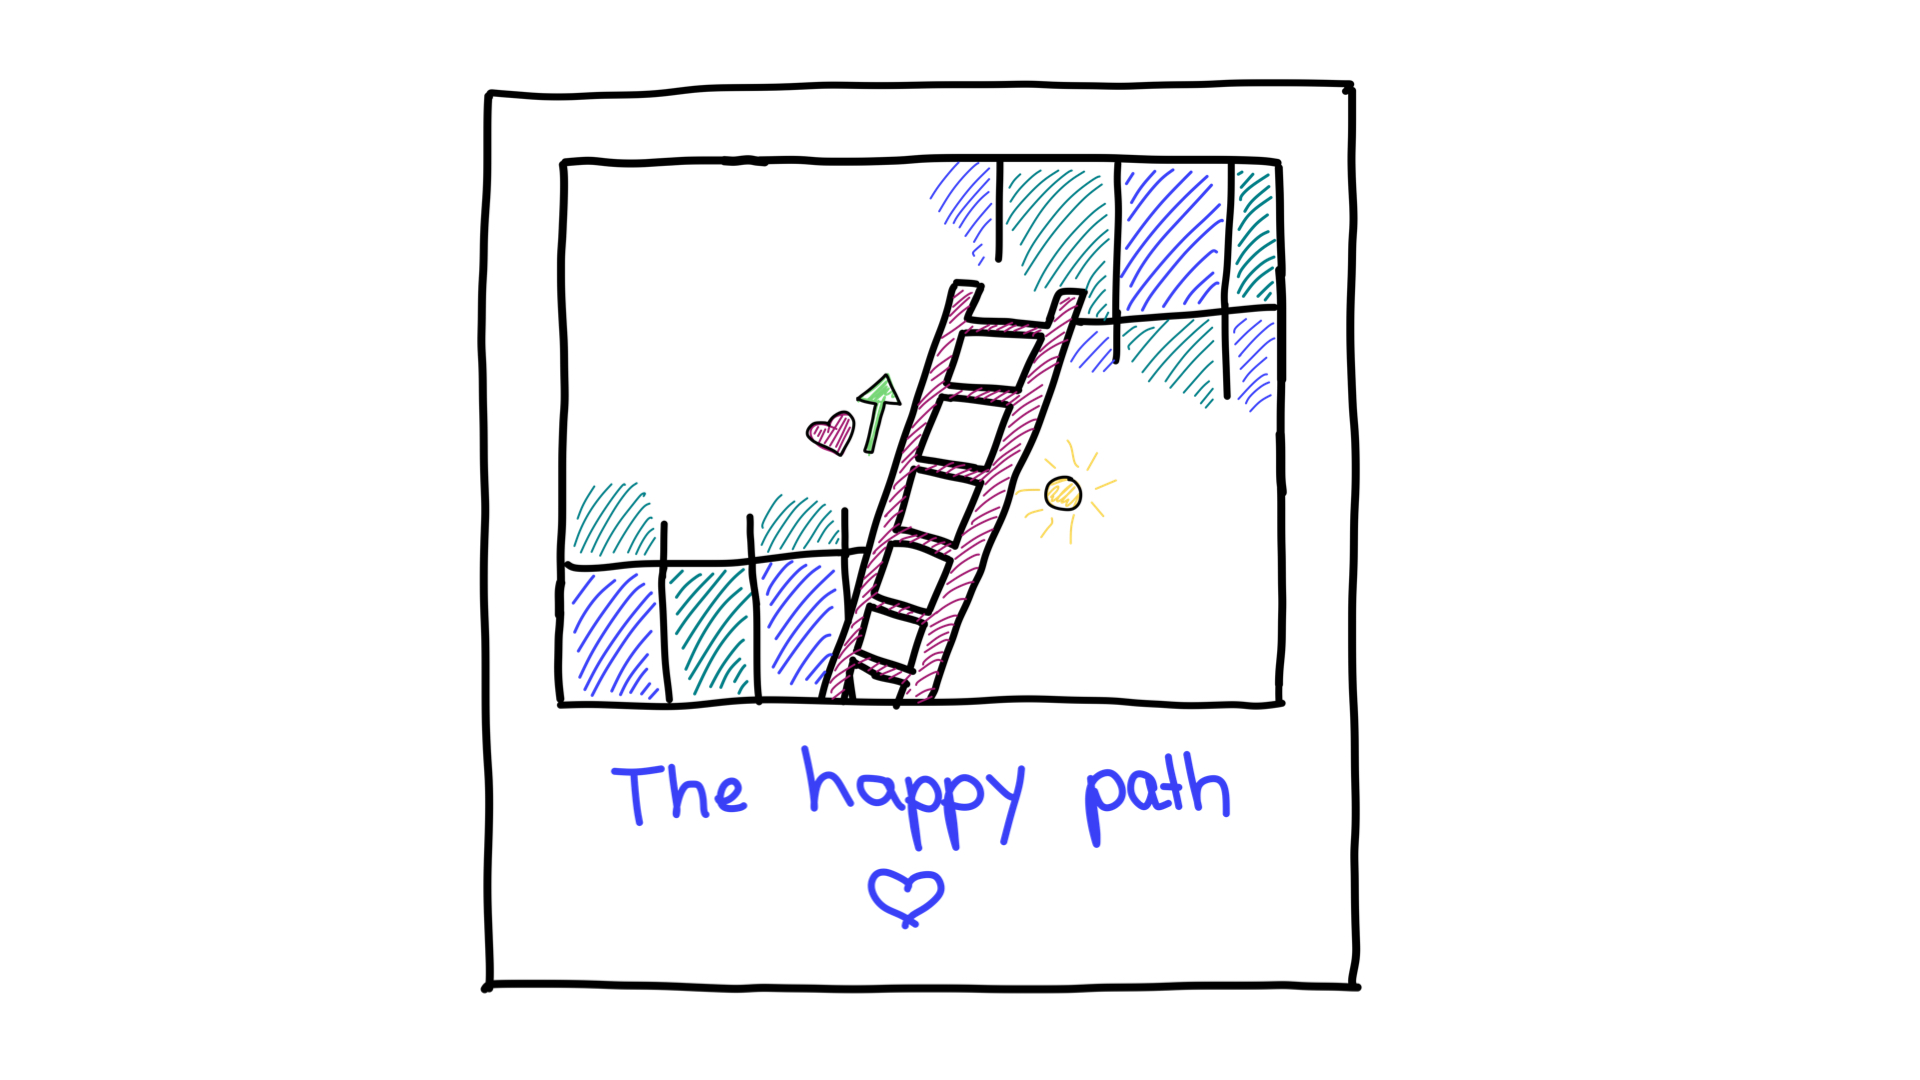 O caminho da felicidade.